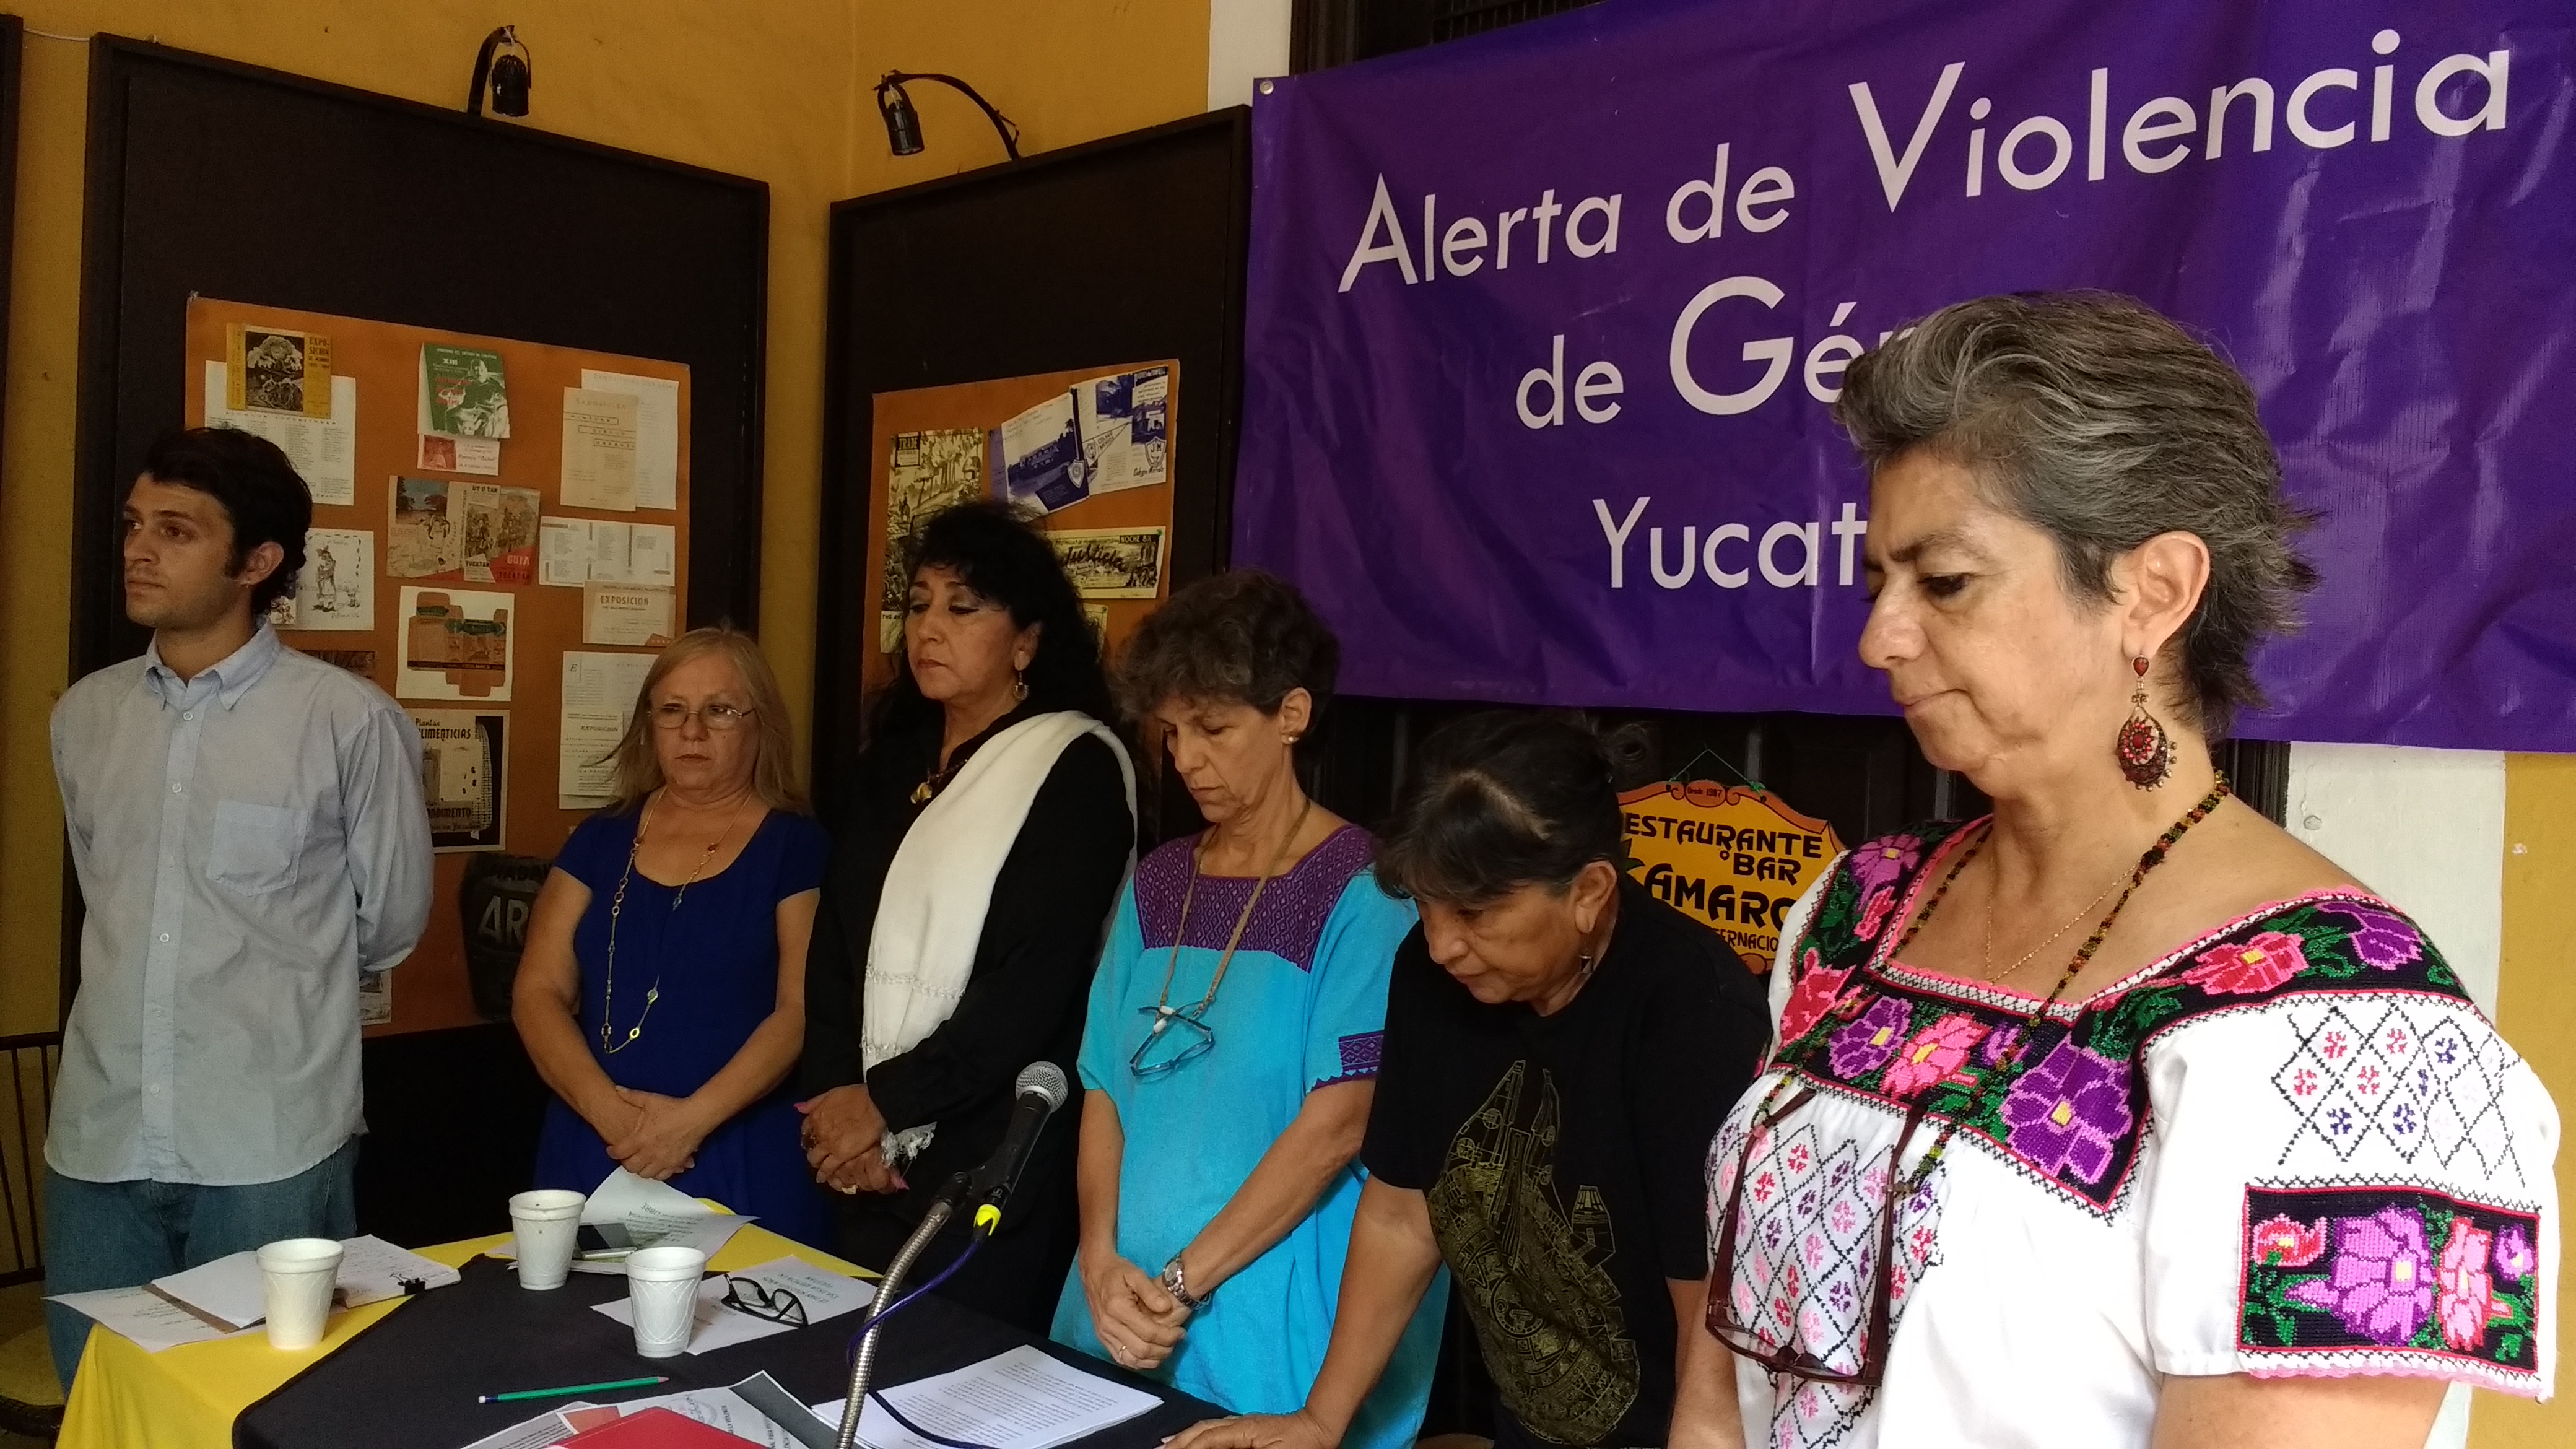 Justifican petición de alerta de género en Yucatán